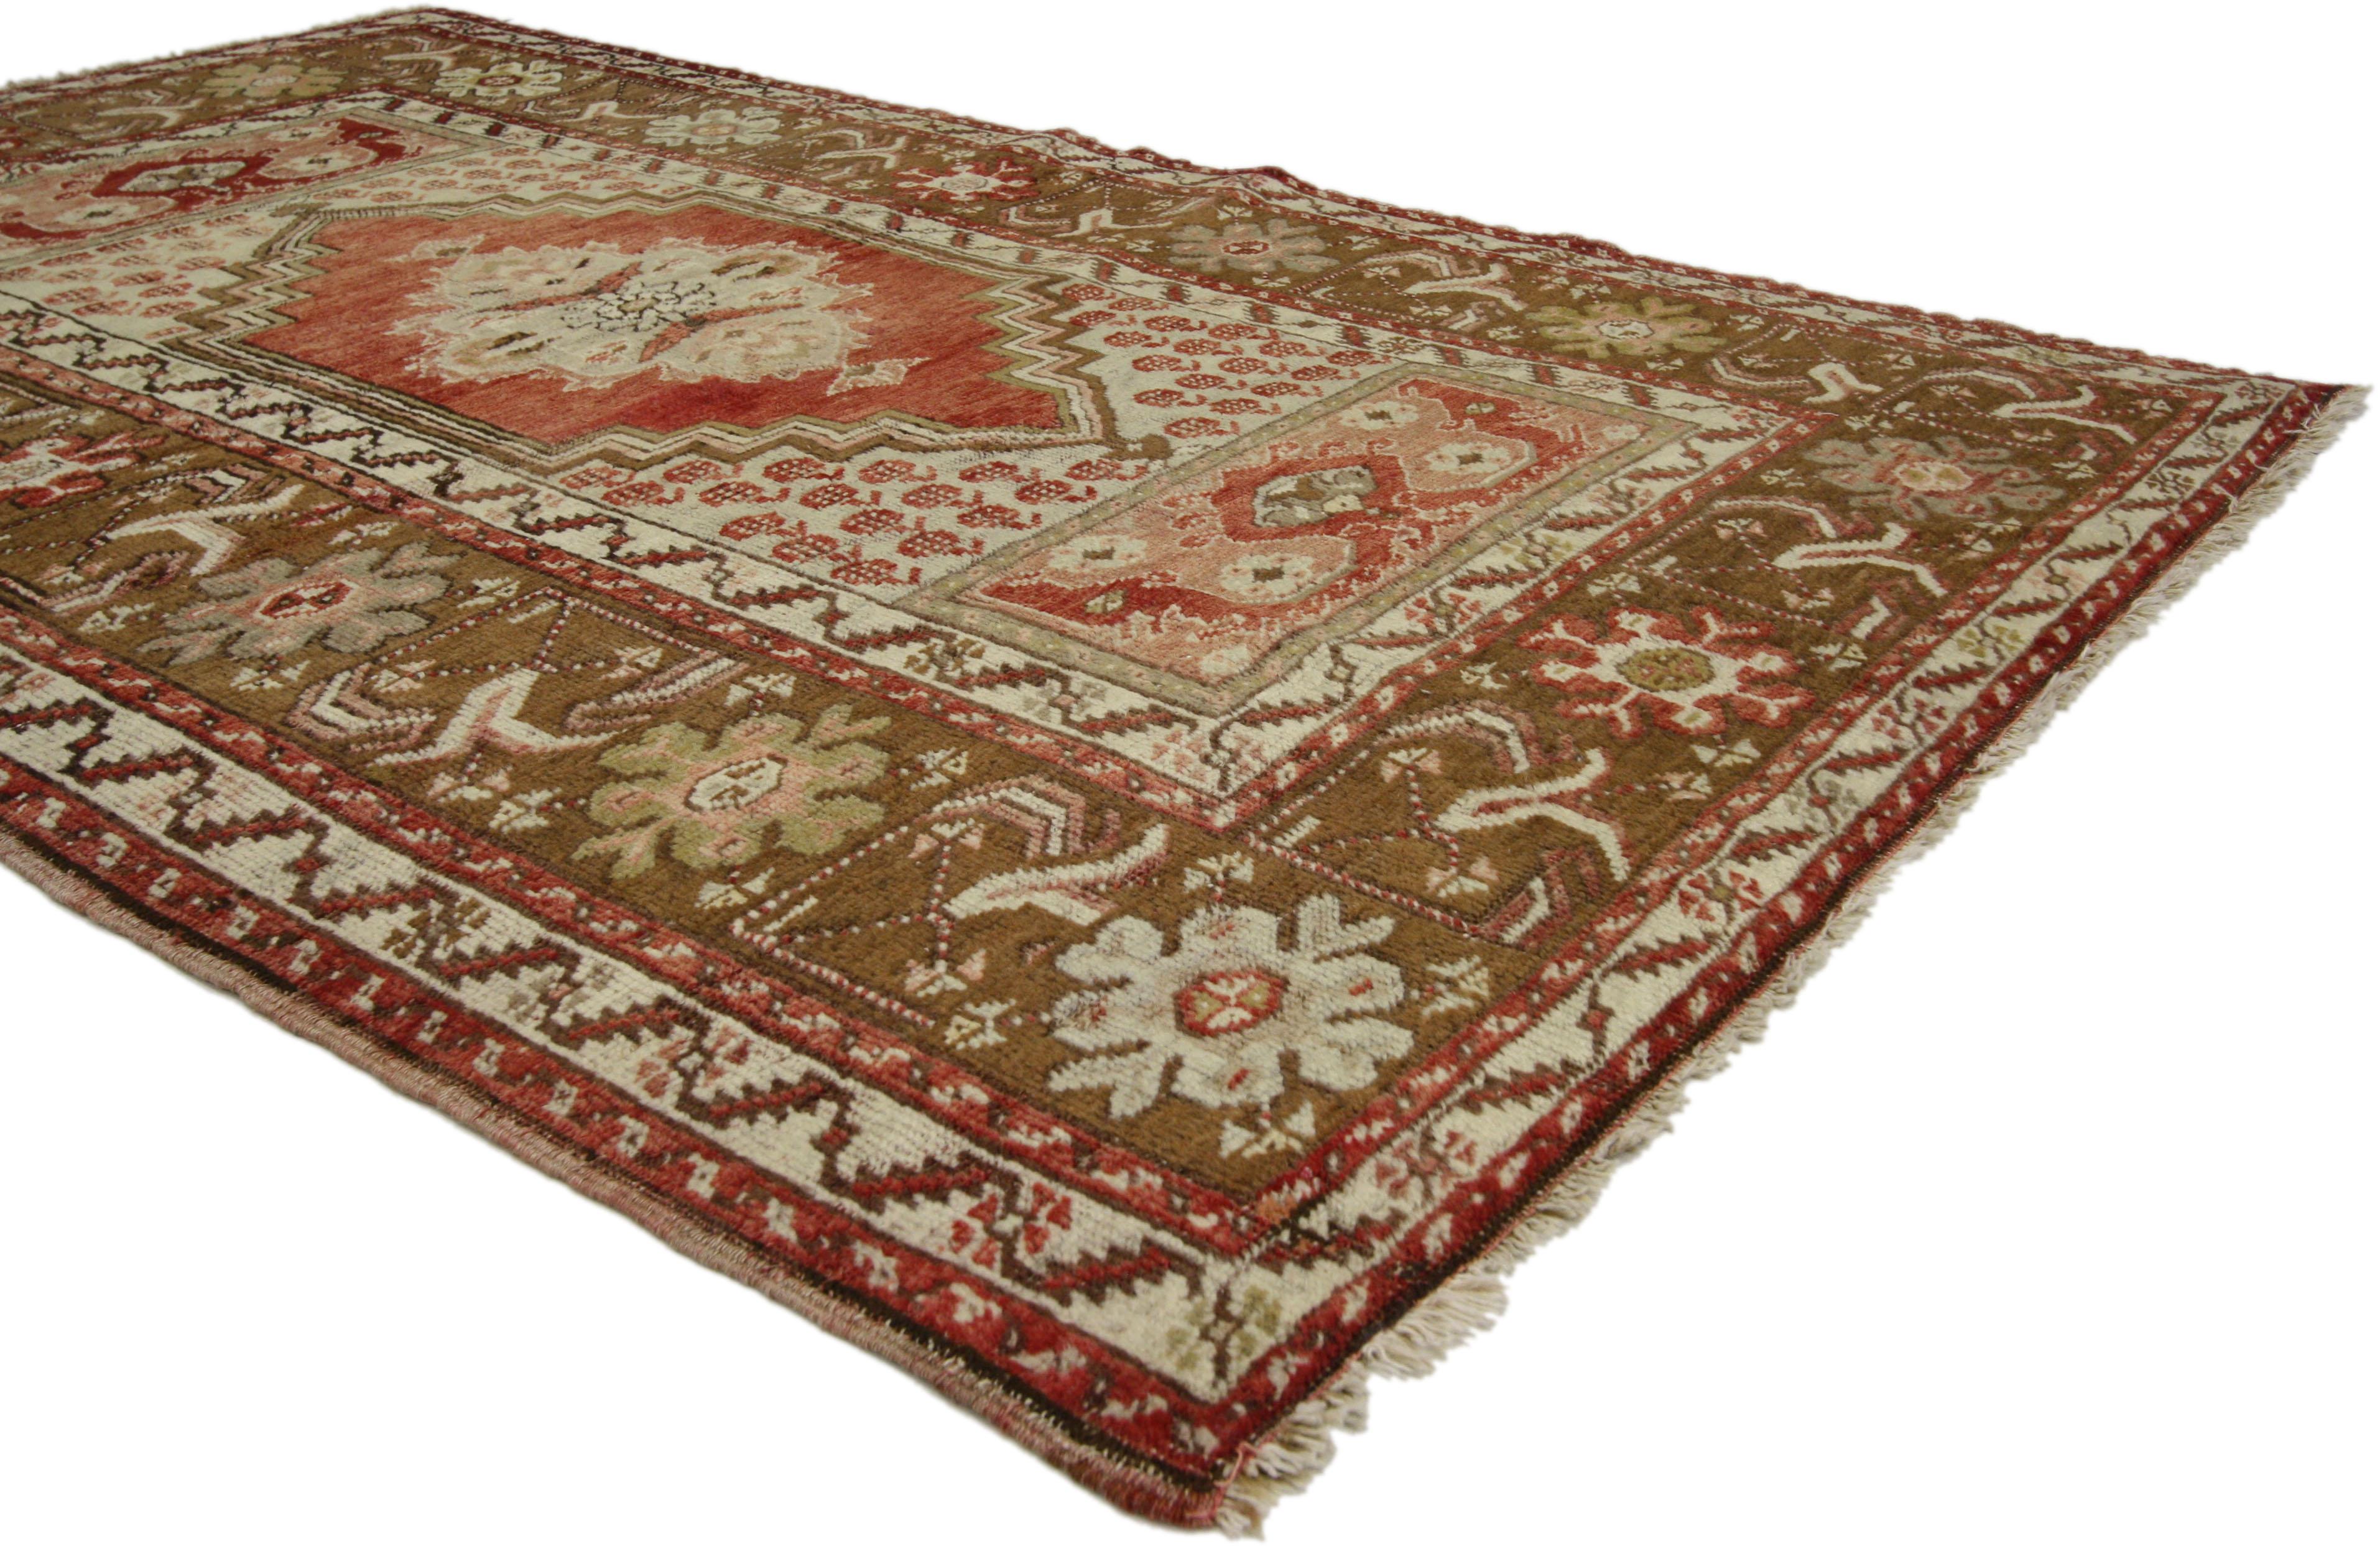 73849, tapis vintage turc Oushak, tapis d'entrée ou de foyer. Ce tapis turc Oushak vintage présente un style moderne et traditionnel. Imprégné de l'histoire de l'Anatolie et de couleurs raffinées, ce tapis vintage turc Oushak allie simplicité et